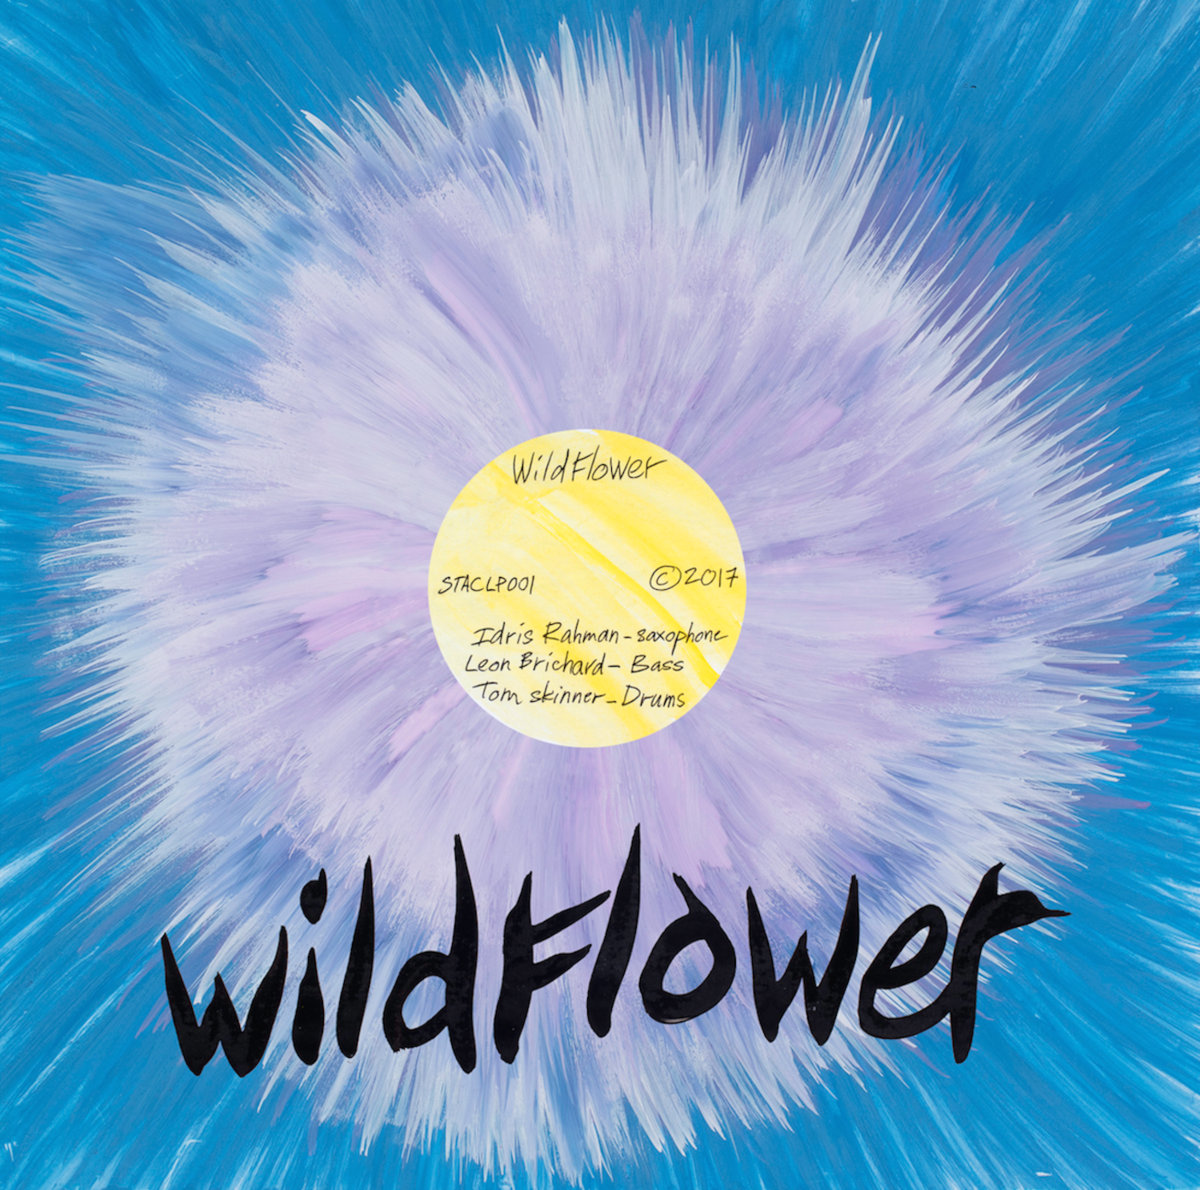 wildflower - wildflower lp.jpg